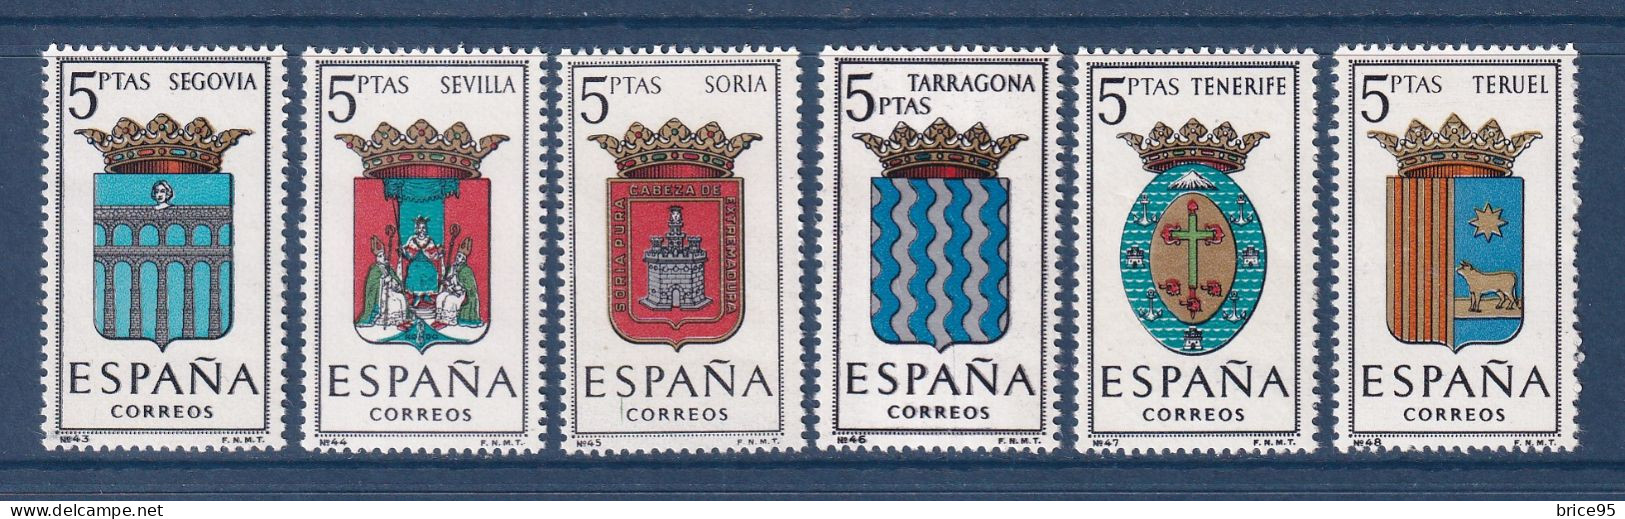 Espagne - YT N° 1326 à 1331 ** - Neuf Sans Charnière - 1965 - Ungebraucht